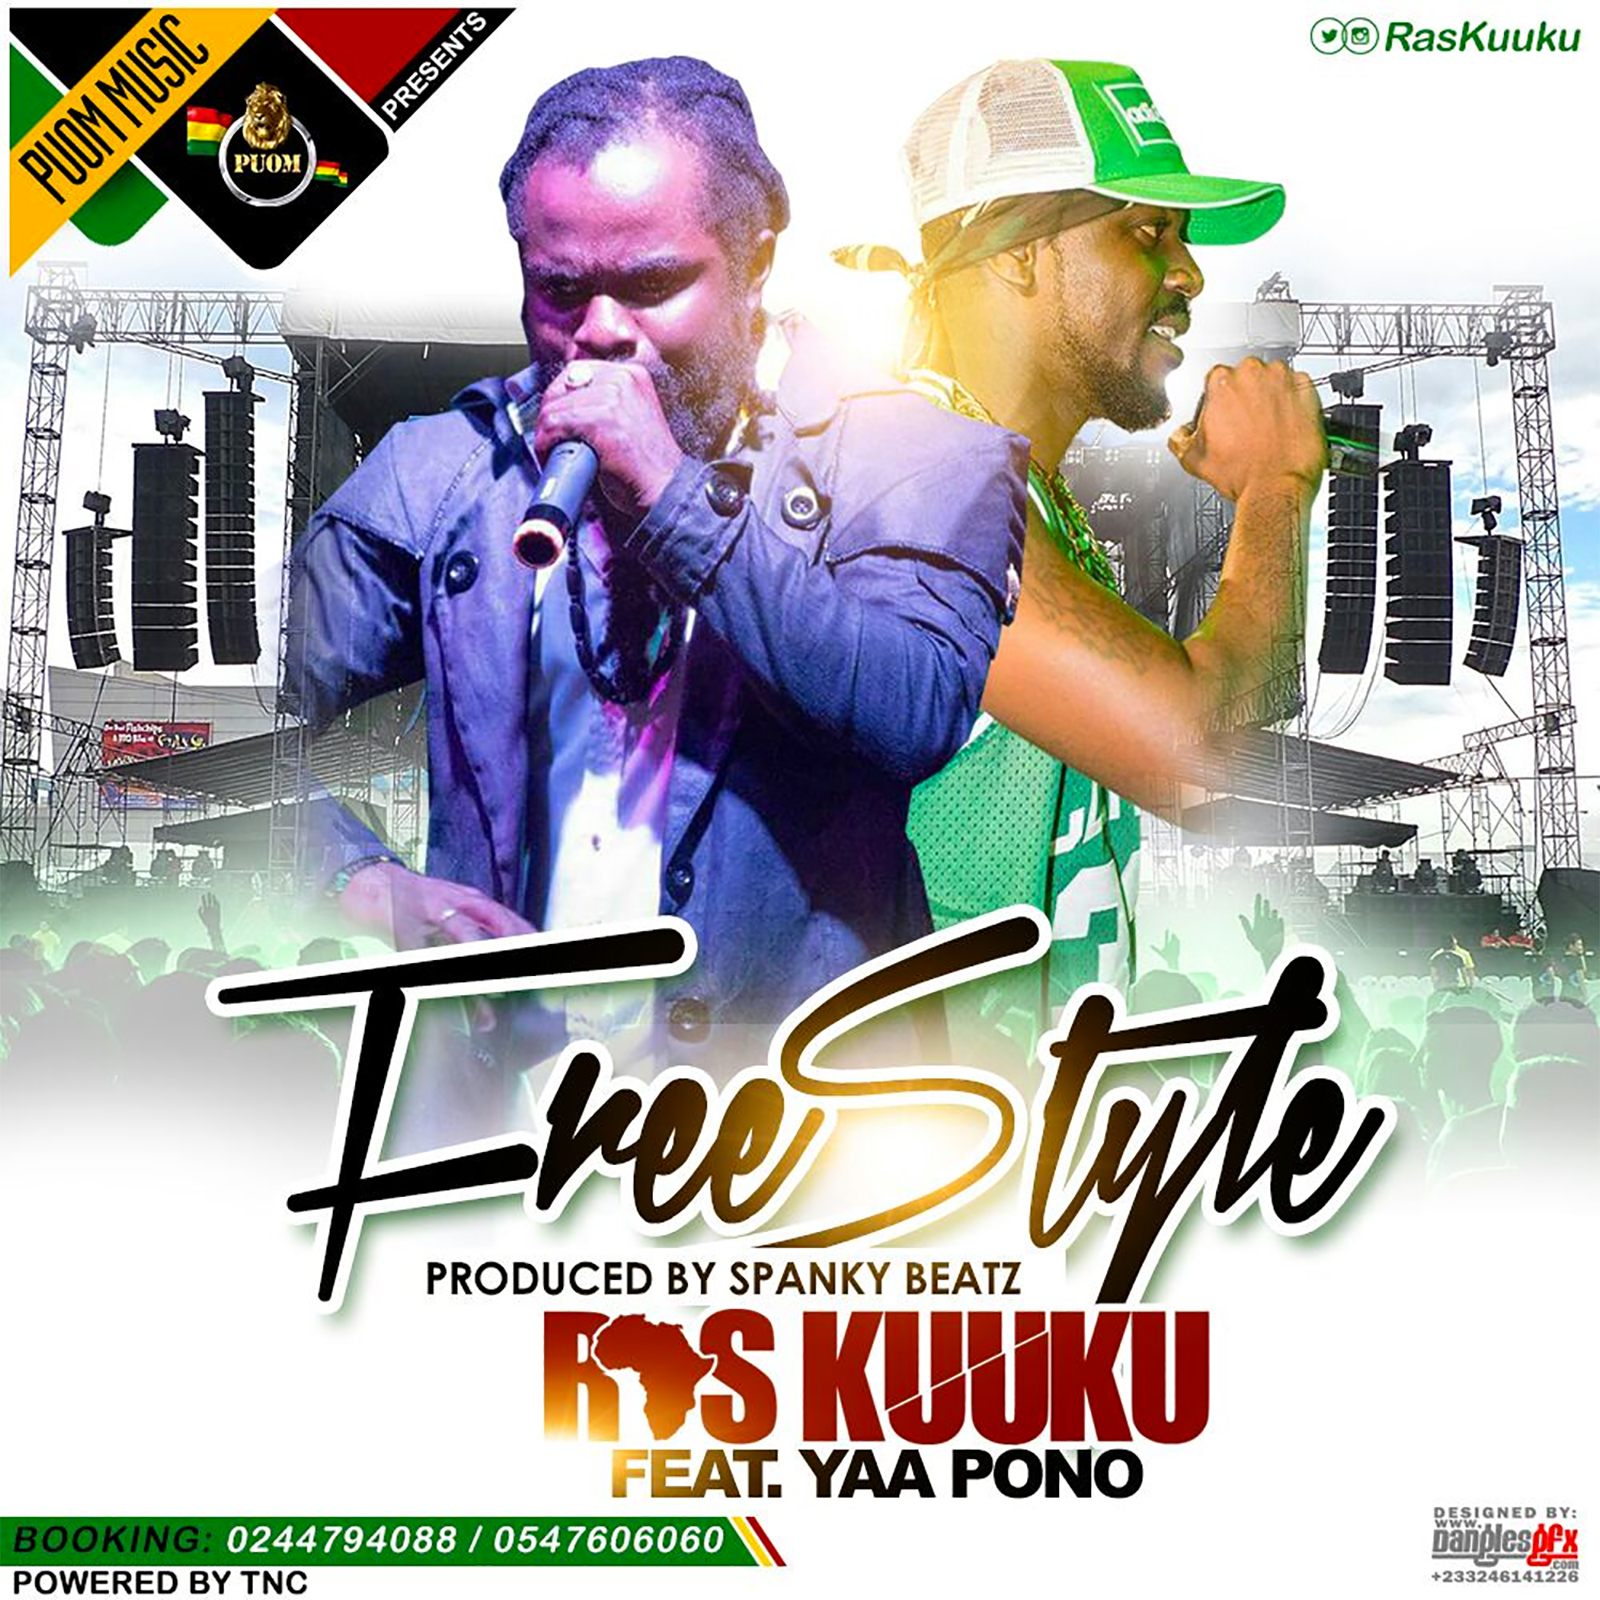 Freestyle by Ras Kuuku feat. Yaa Pono